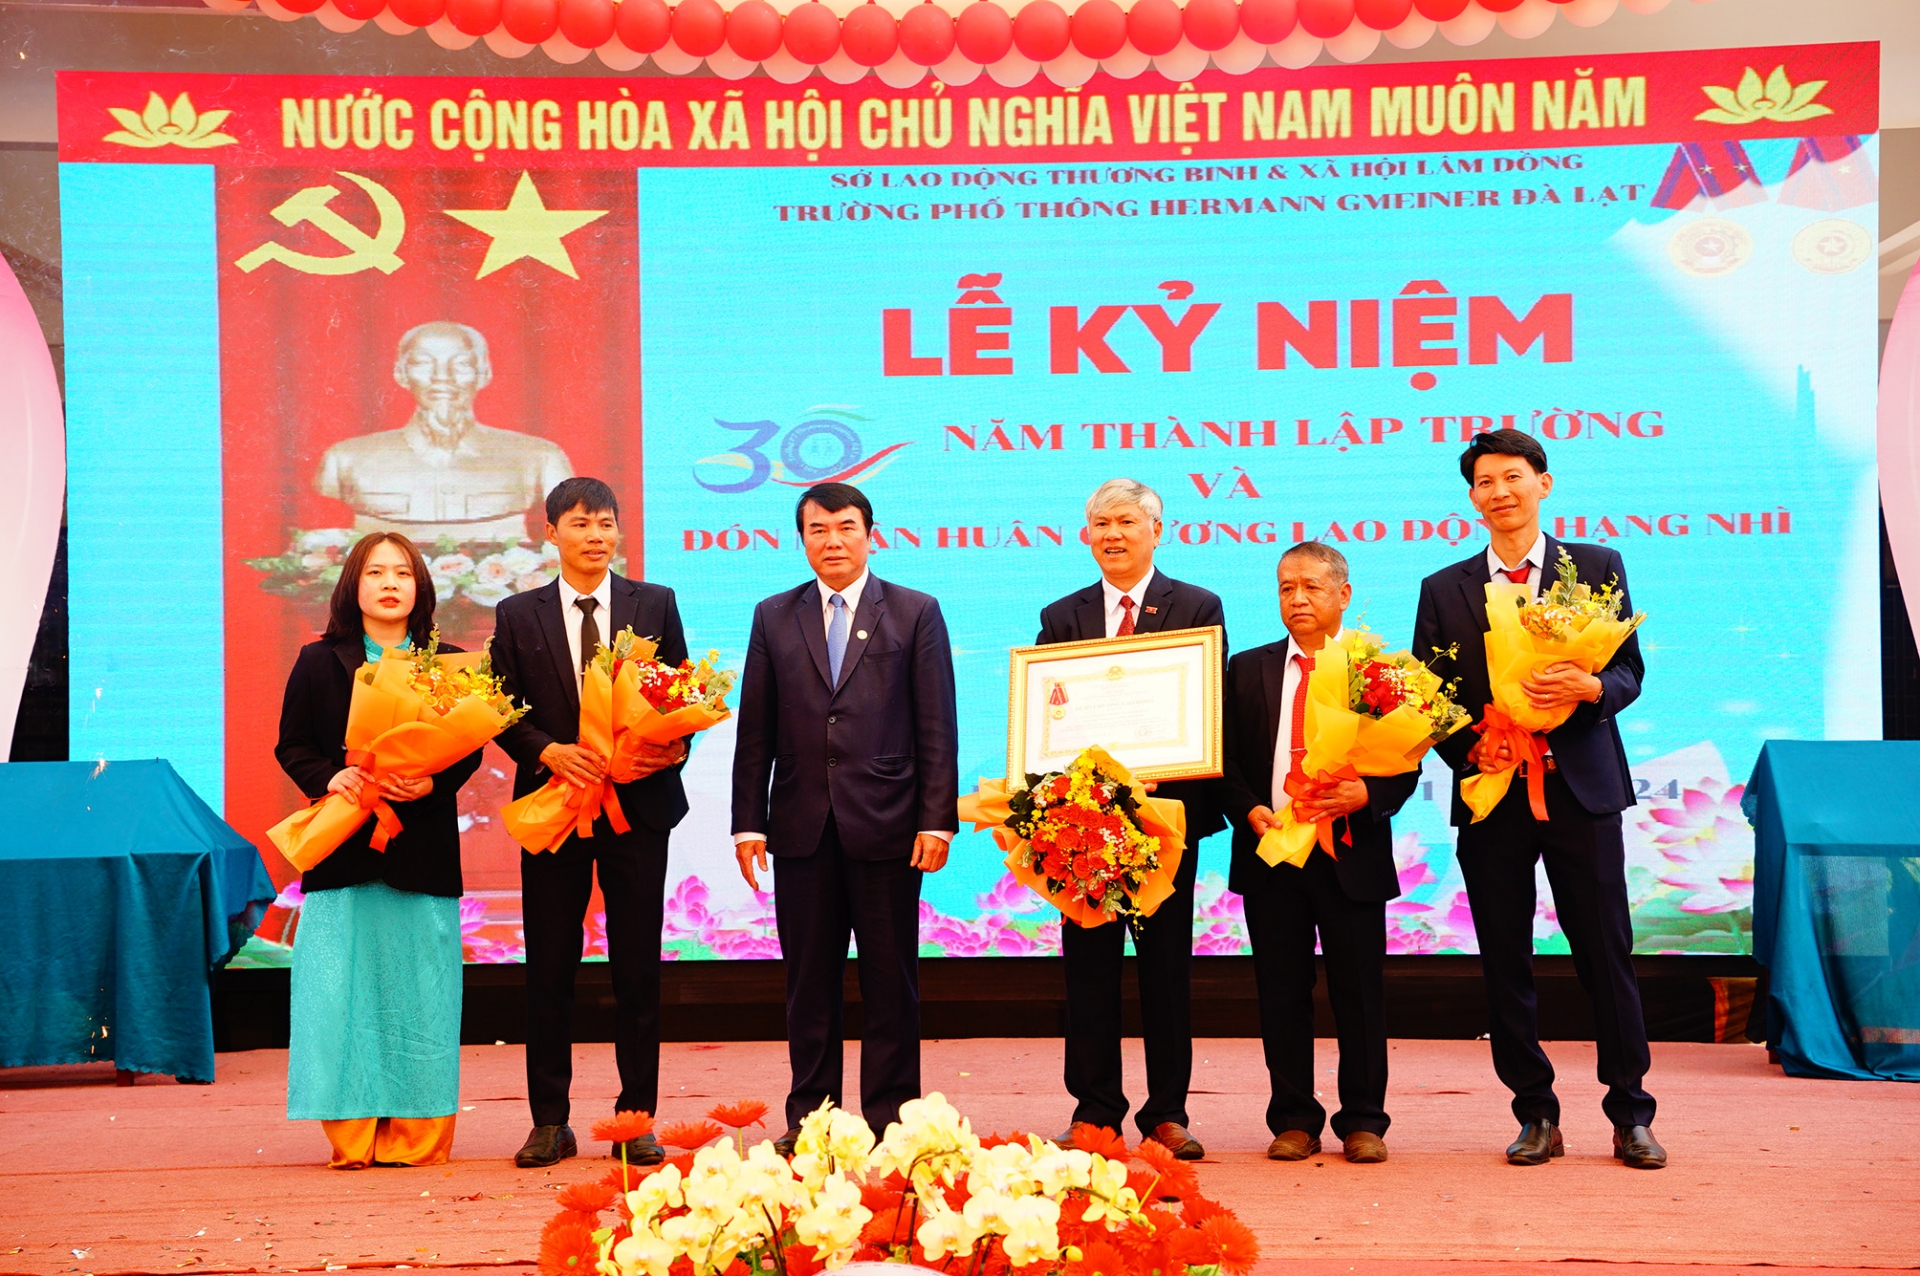 Đồng chí Phạm S- Phó Chủ tịch UBND tỉnh, trao tặng Huân chương Lao động hạng Nhì cho thầy va trò nhà trường